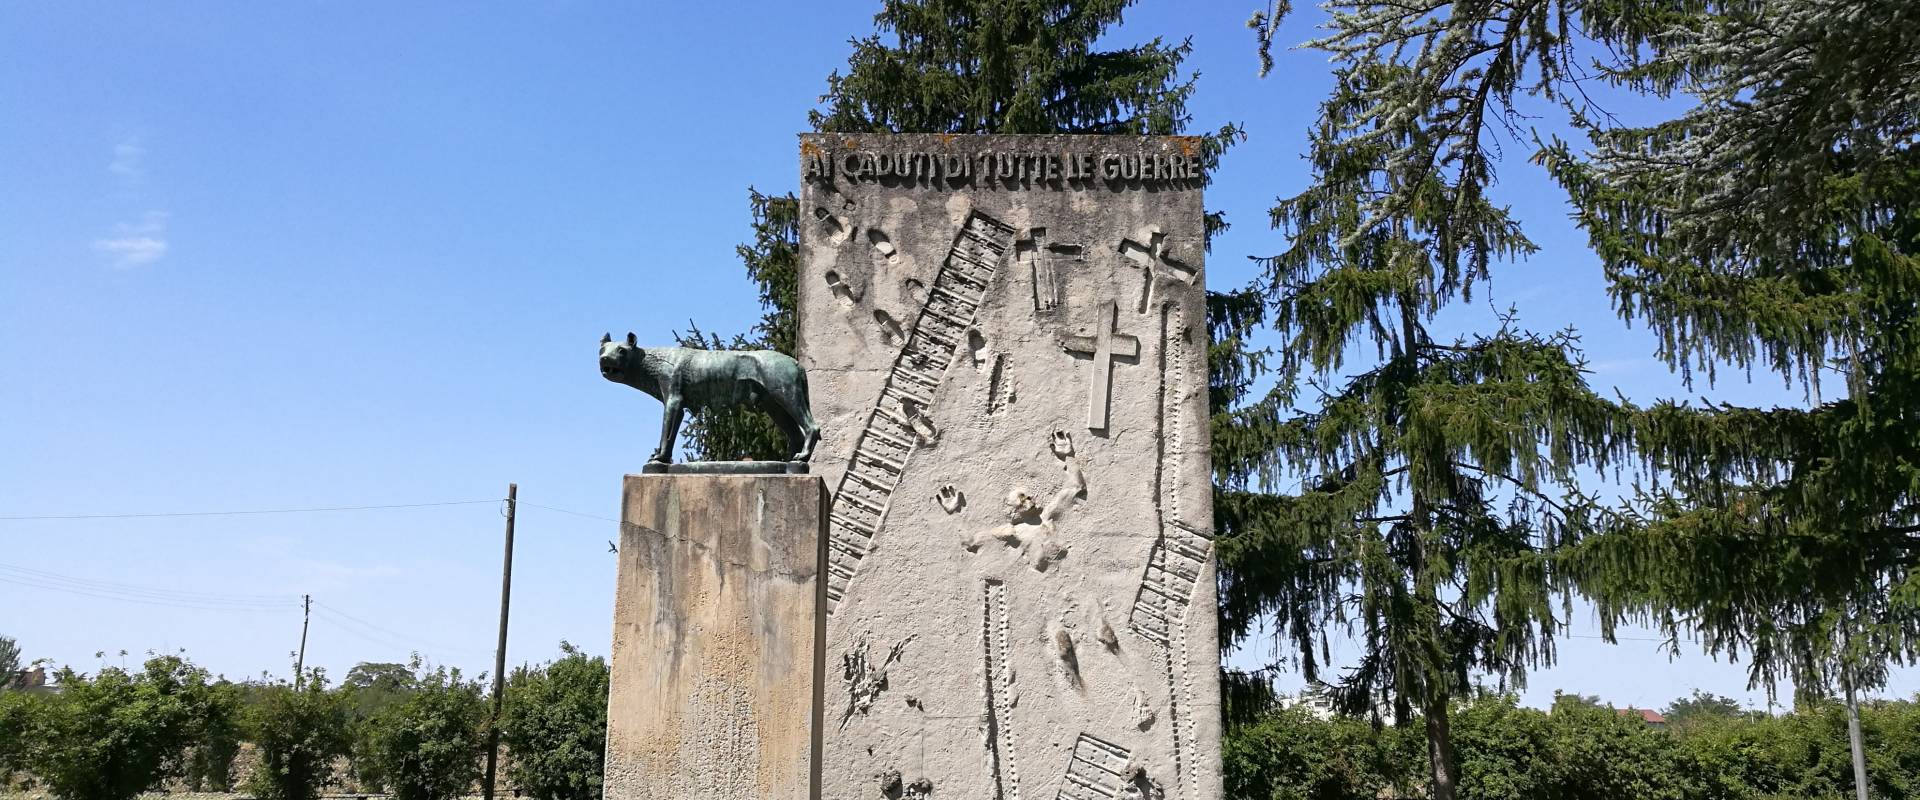 Monumento ai caduti 1, all'esterno del cimitero monumentale di Massa Lombarda photo by Drake9996